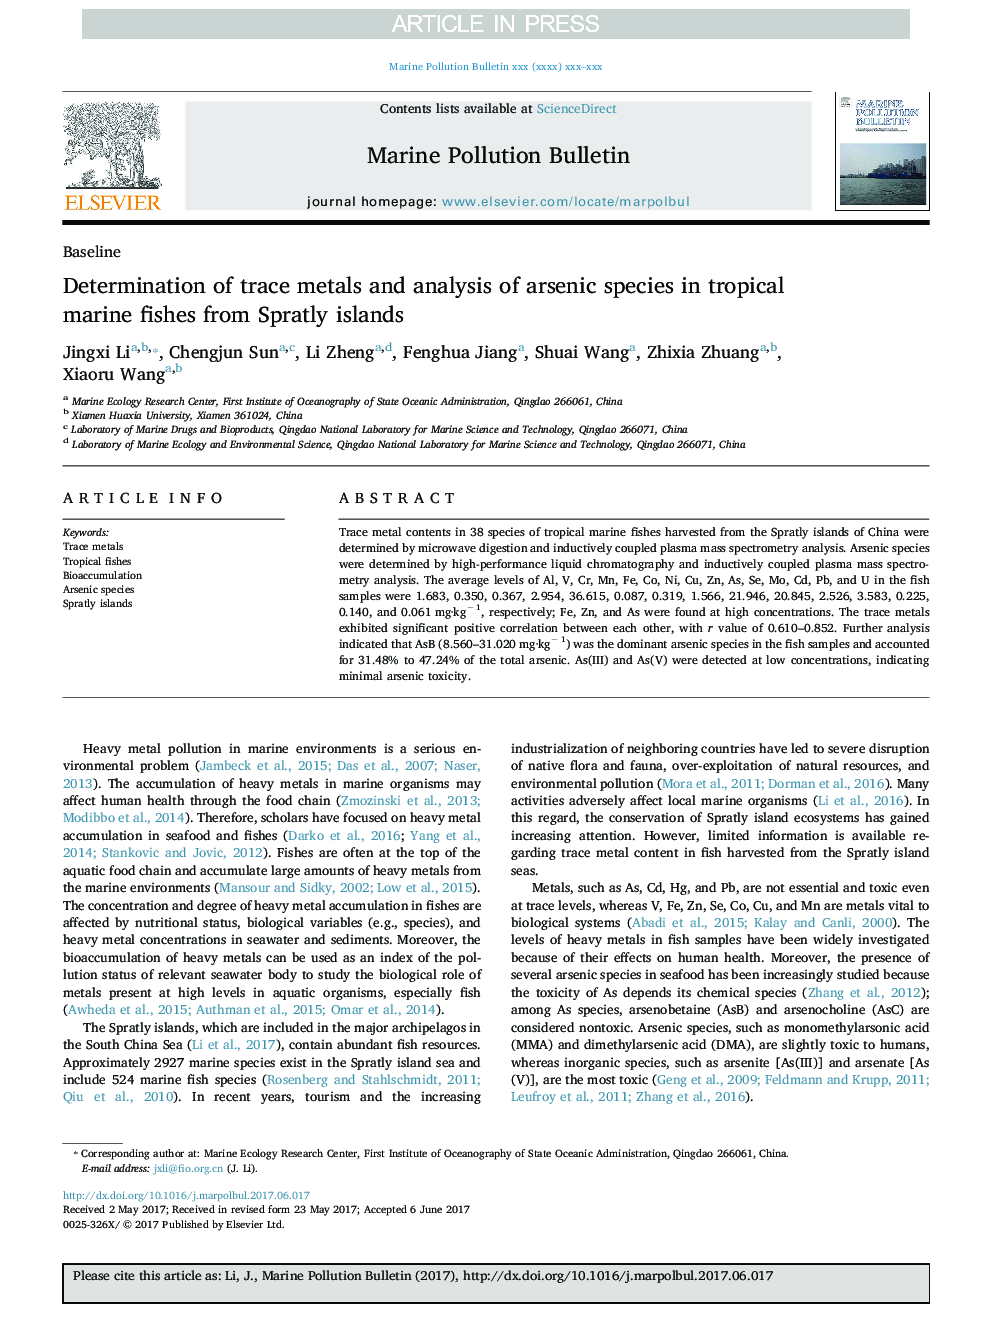 تعیین فلزات ردیابی و تجزیه و تحلیل گونه های آرسنیک در ماهی های دریایی گرمسیری از جزایر اسپاتتی 